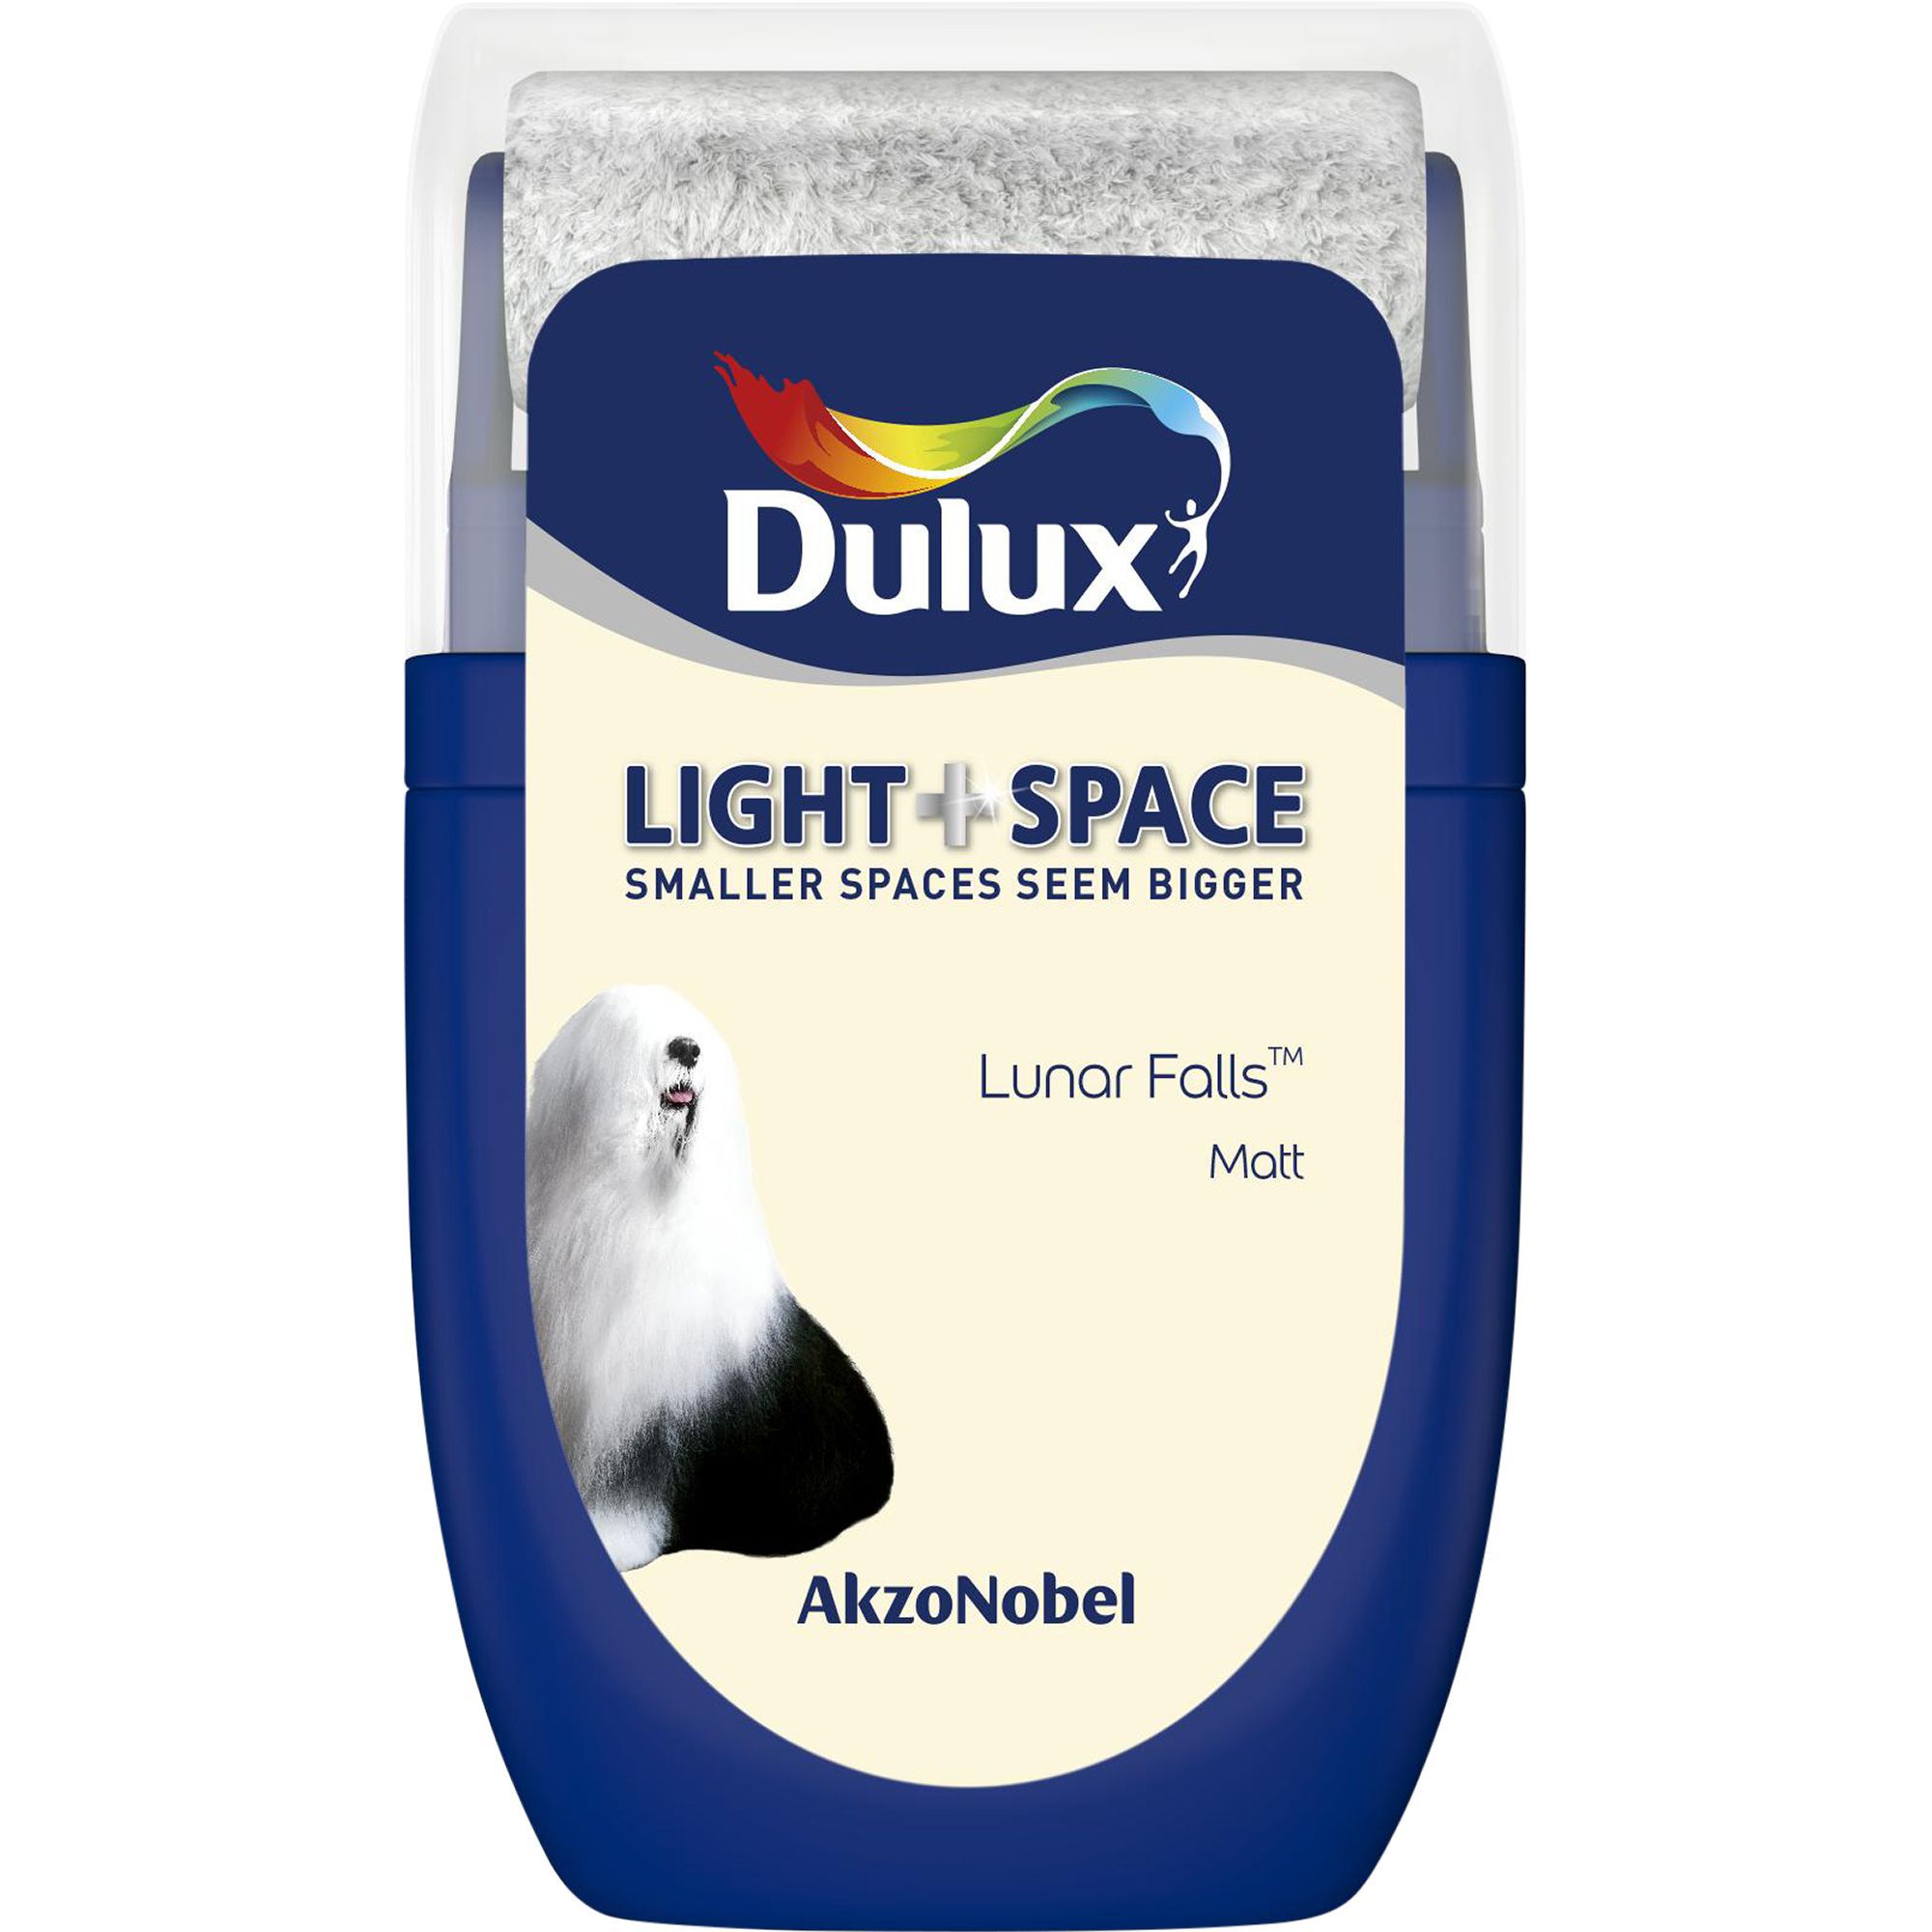 Dulux Light & space Lunar falls Matt Emulsion paint 30ml Tester pot